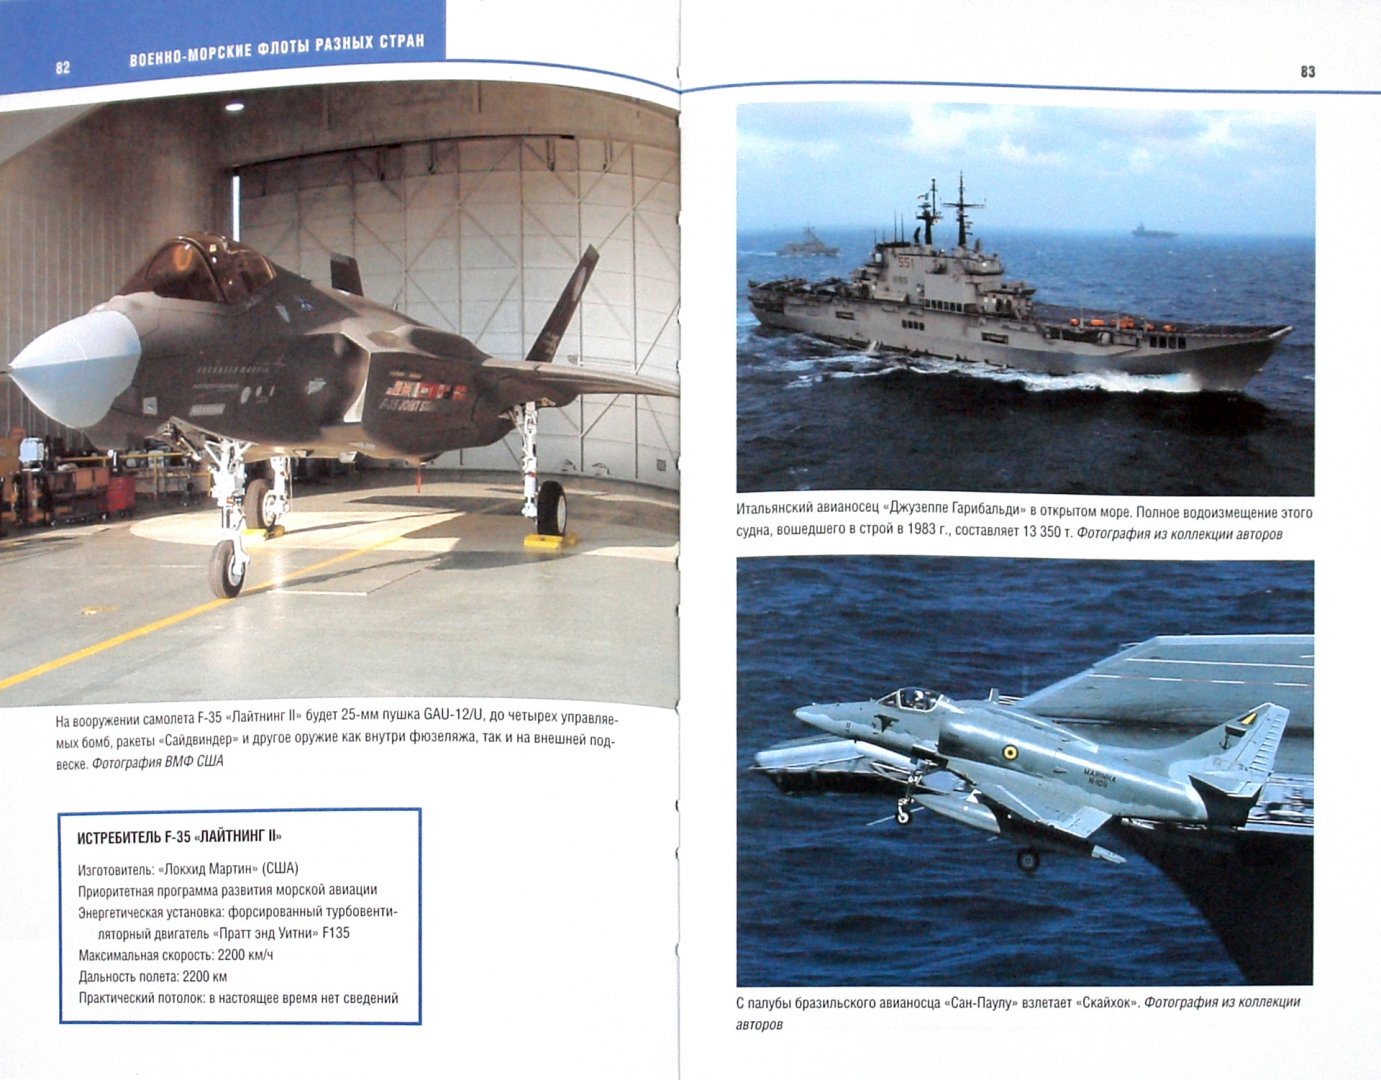 Иллюстрация 1 из 24 для Военные корабли. Мощь и сила современного флота - Боннер, Боннер | Лабиринт - книги. Источник: Лабиринт